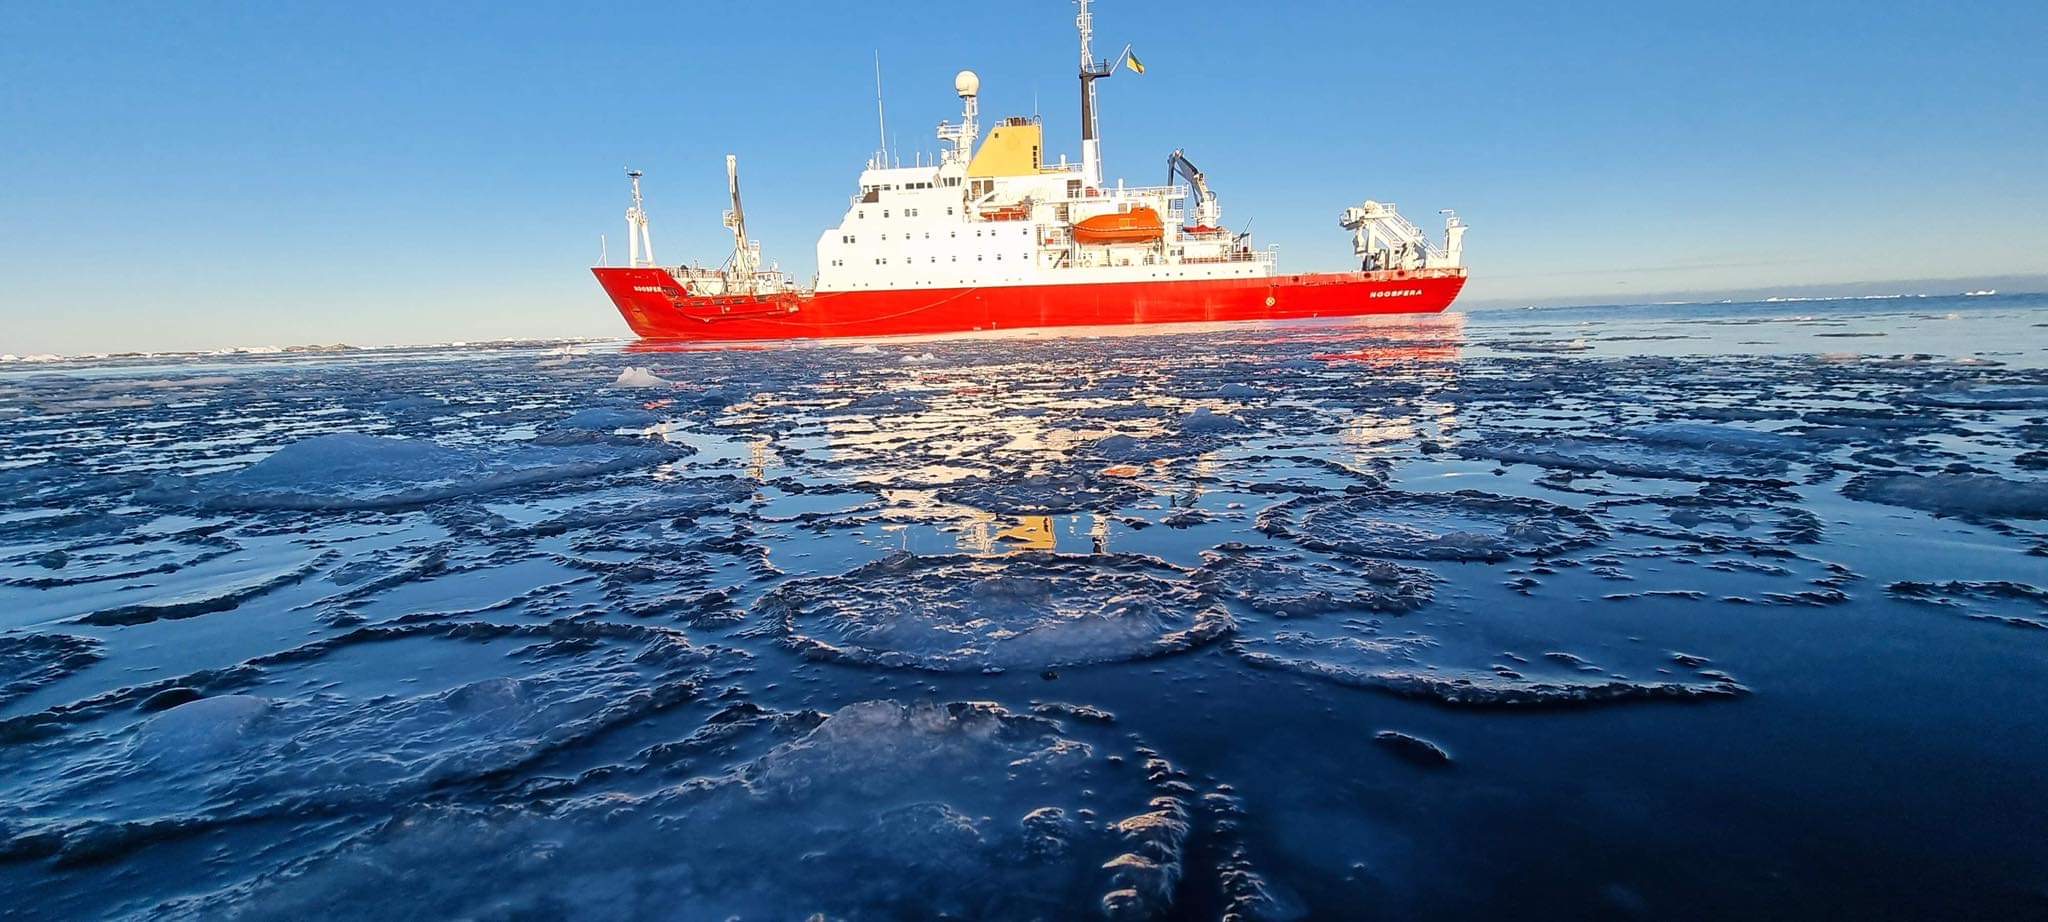 В Антарктике установили указатель на Измаил